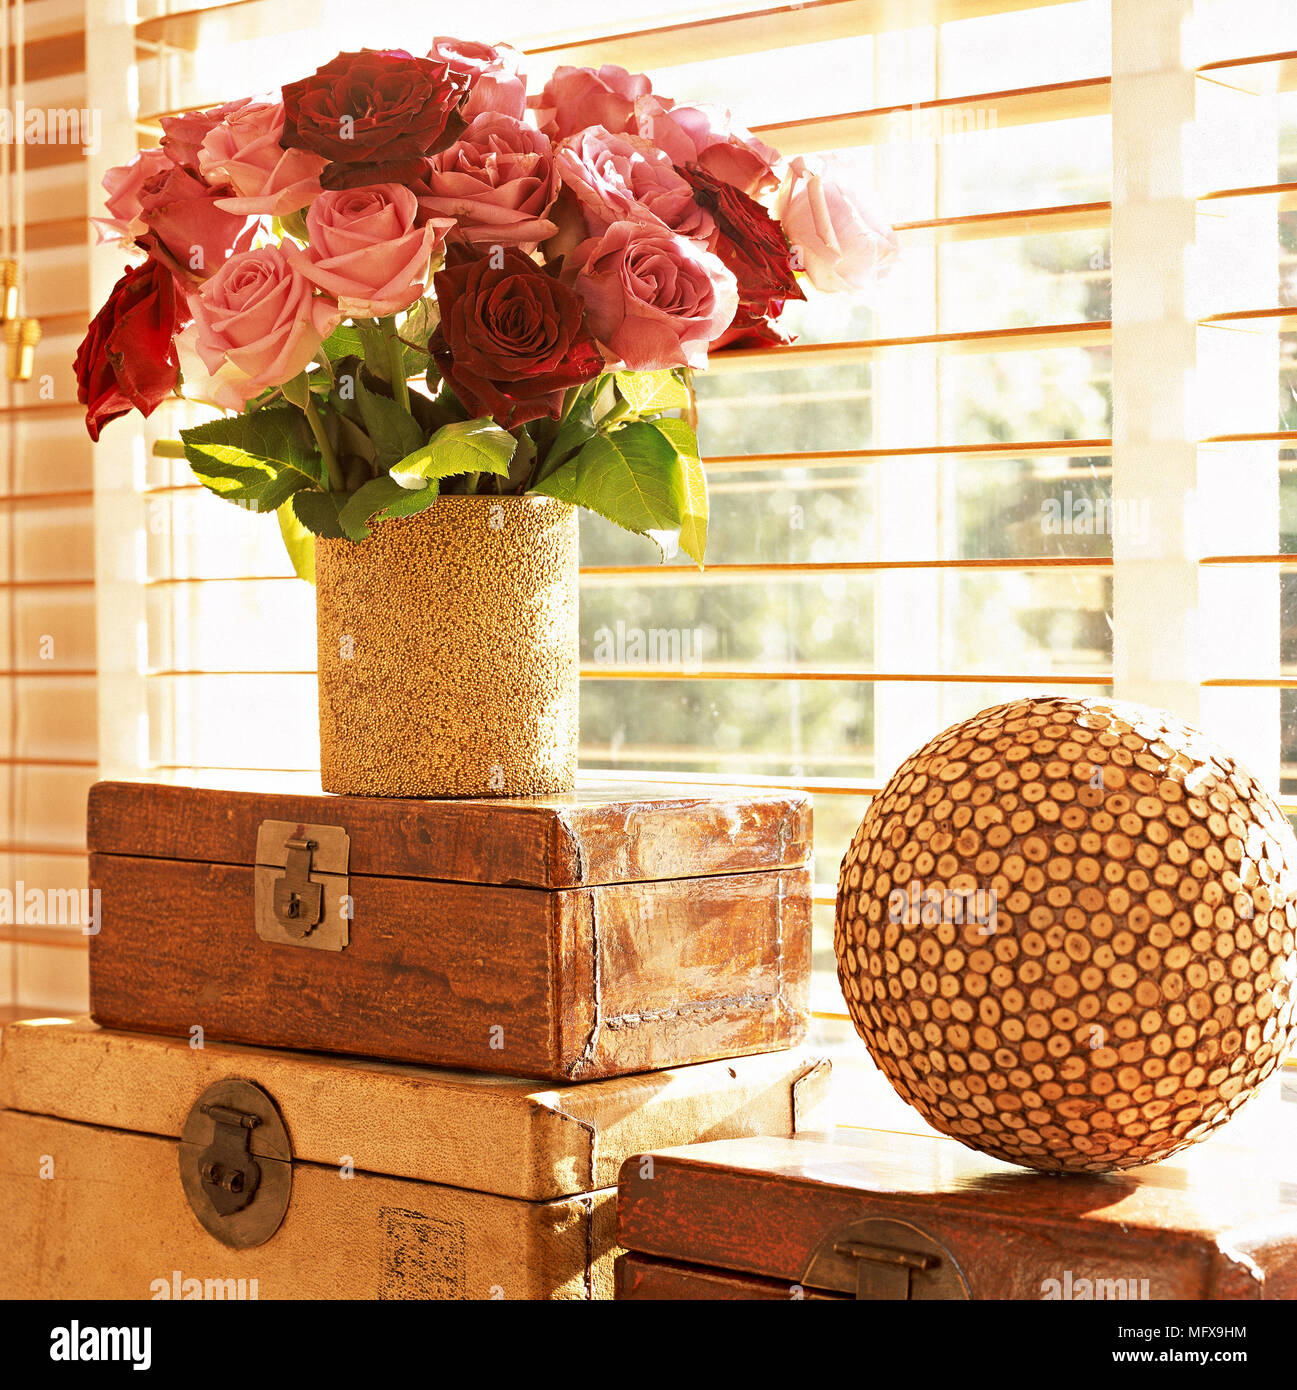 Ein Detail einer Blume Anordnung der roten und rosa Rosen in Vase, drei Holzkisten, sphärischen Ornament, Lattenrost blind, Fenster, Stockfoto